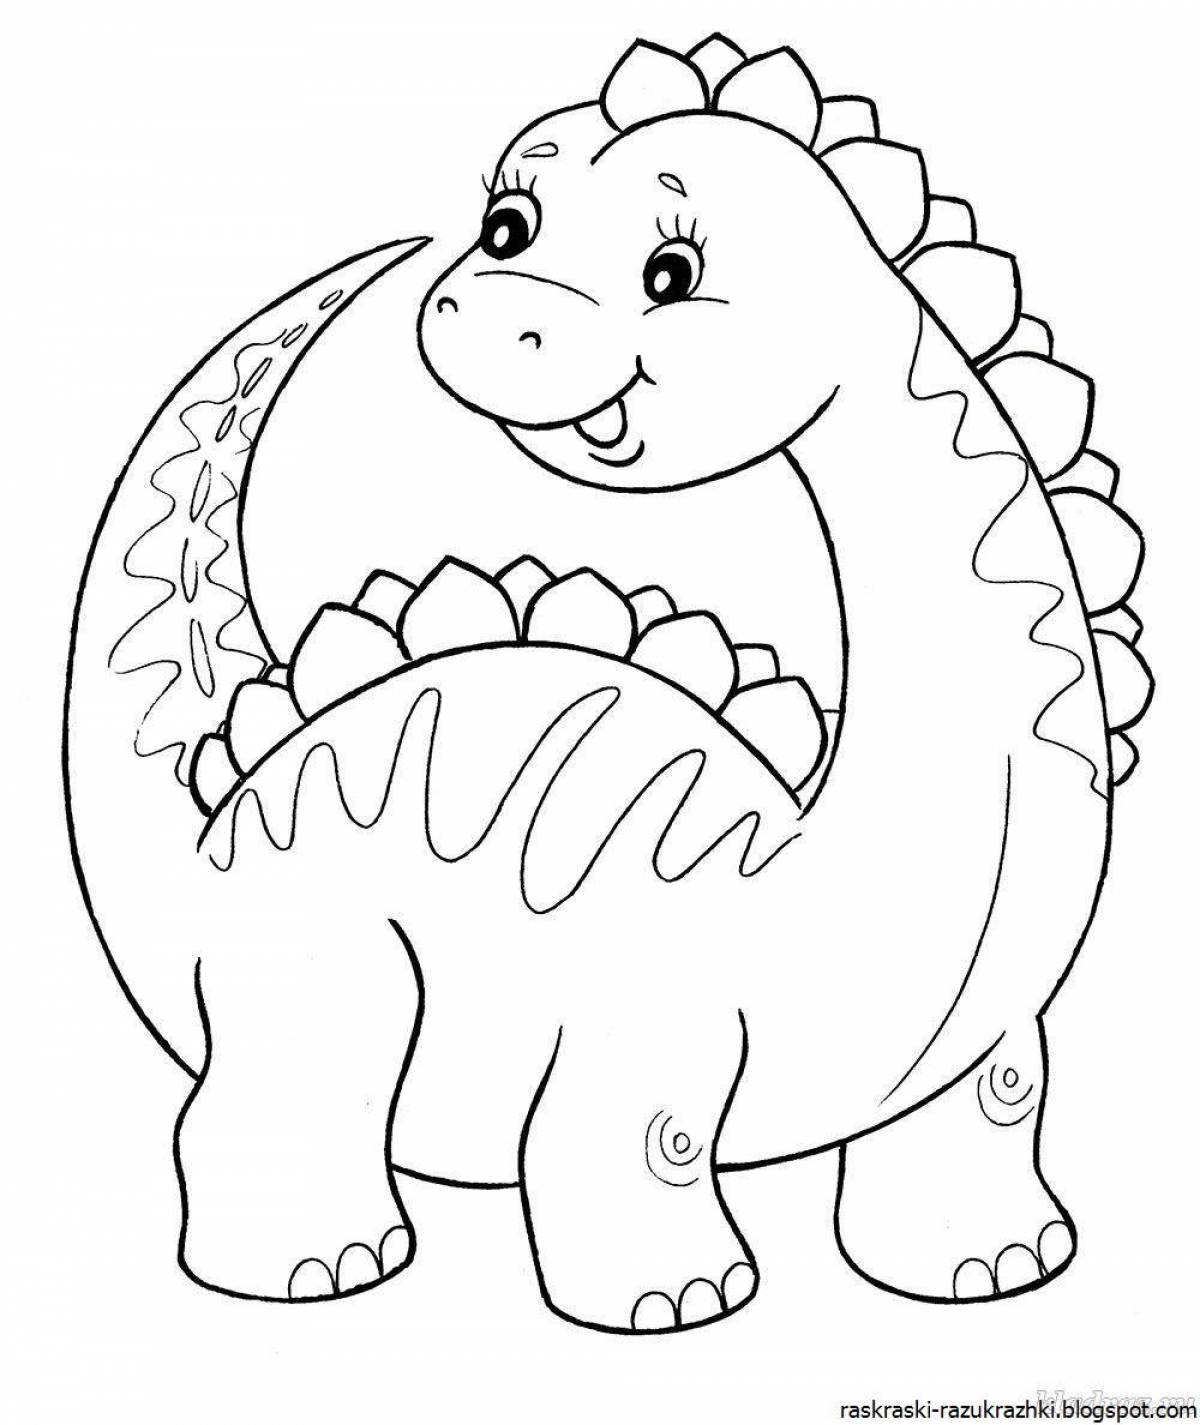 Dinosaur humorous coloring book